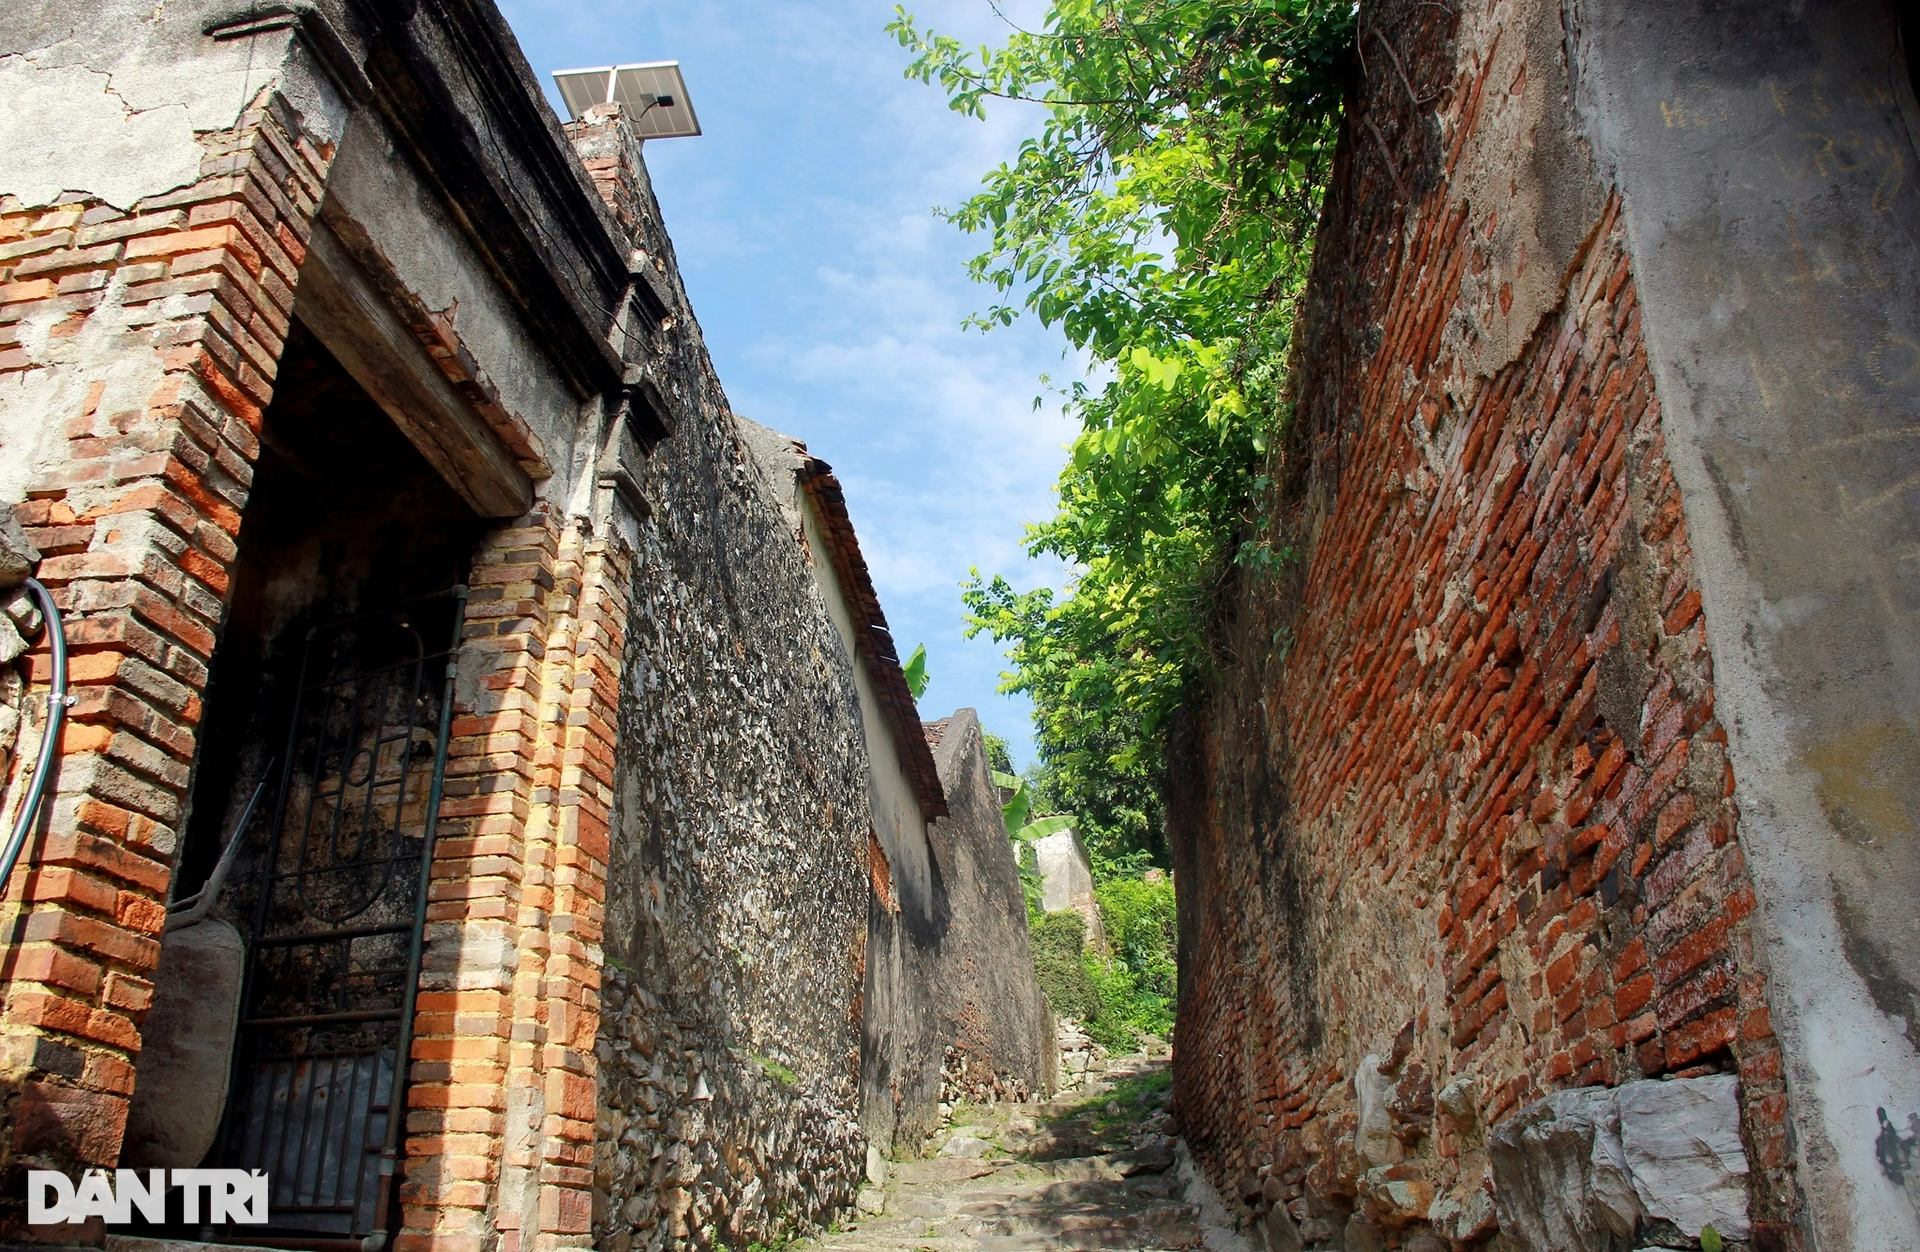 Ngôi làng đặc biệt ở Thanh Hóa, nơi phát hiện cụm mộ cổ 3 người chôn chung - 8